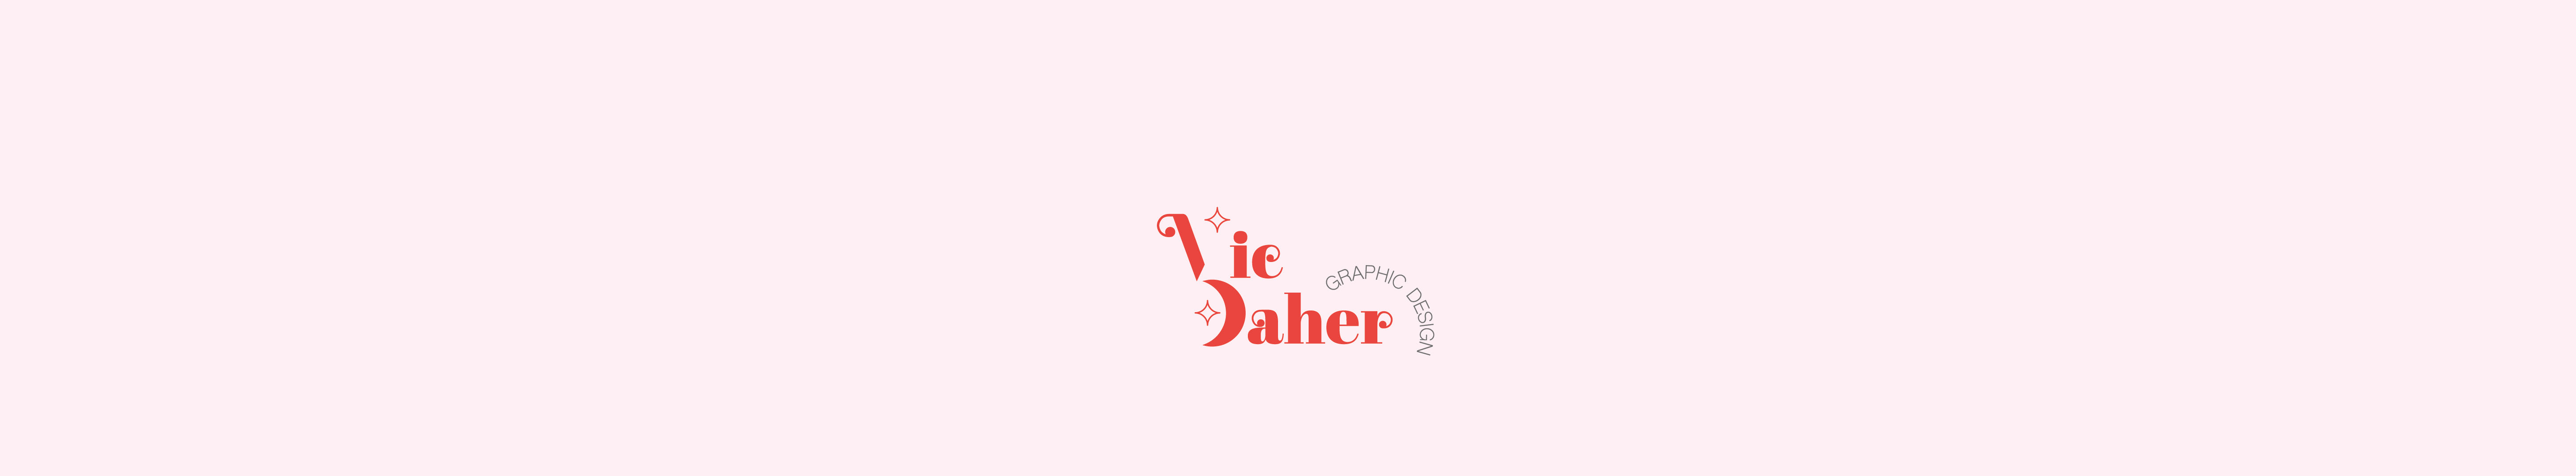 Profil-Banner von Victoria Daher